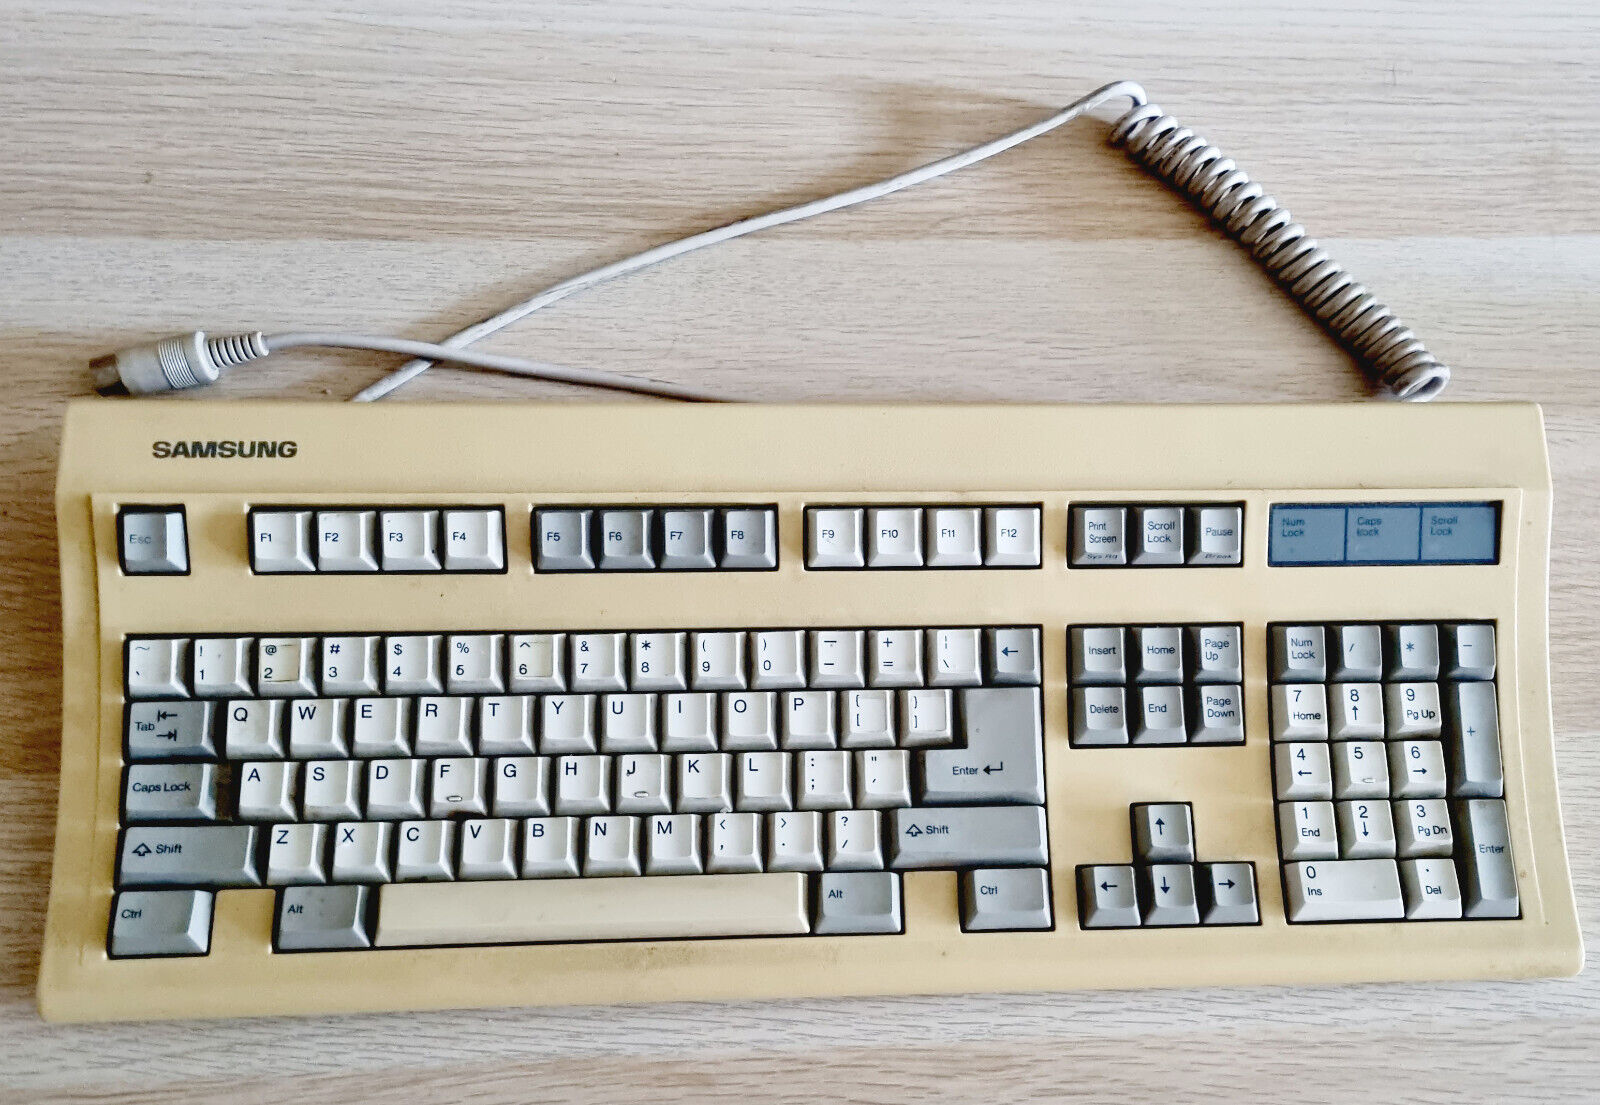 Vintage Samsung SEM-K20S Keyboard 5 PIN DIN